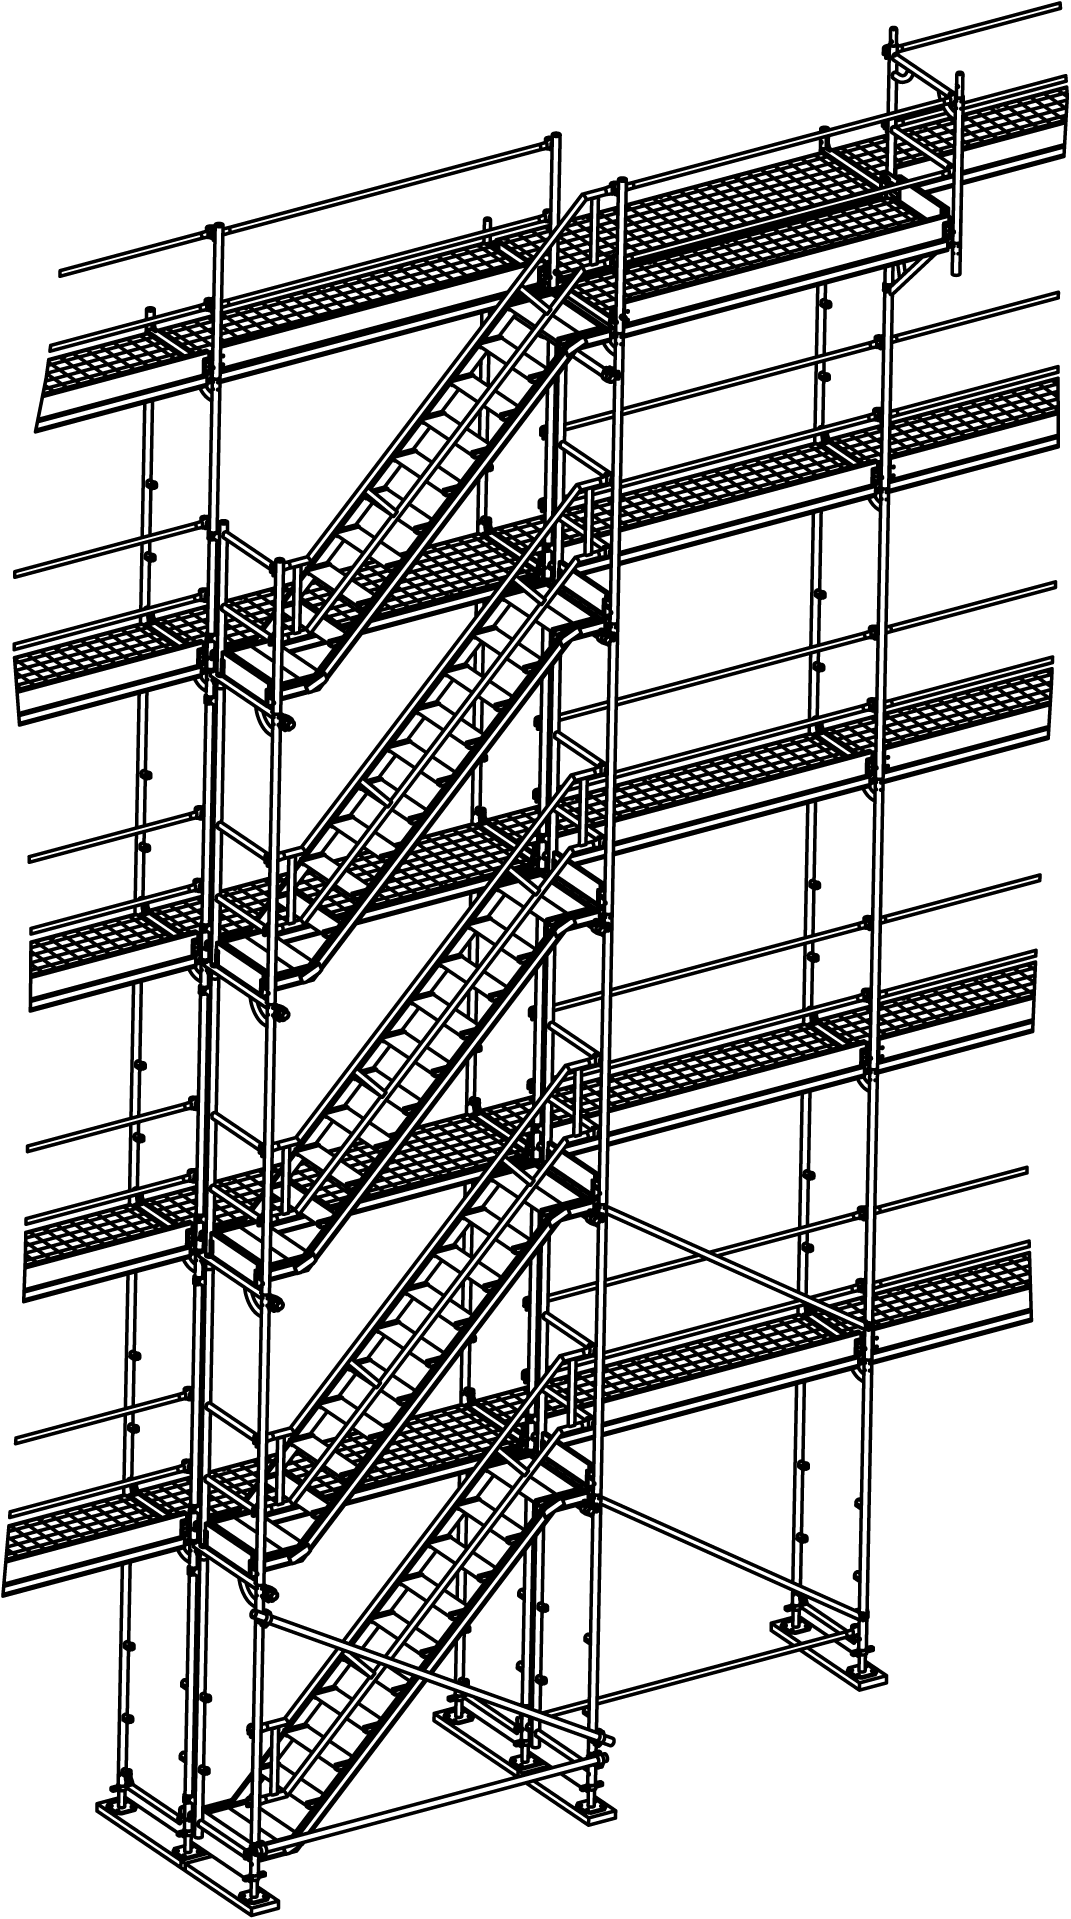 2.3.3.2 Vorgestellter Treppenturm Als Treppenturm wird ein Gerüstfeld mit 75 cm breiten Einstiegs und Eckrahmen (700124, 700100) mit Treppen (705501) und Treppengeländer (705556) vor dem Gerüst